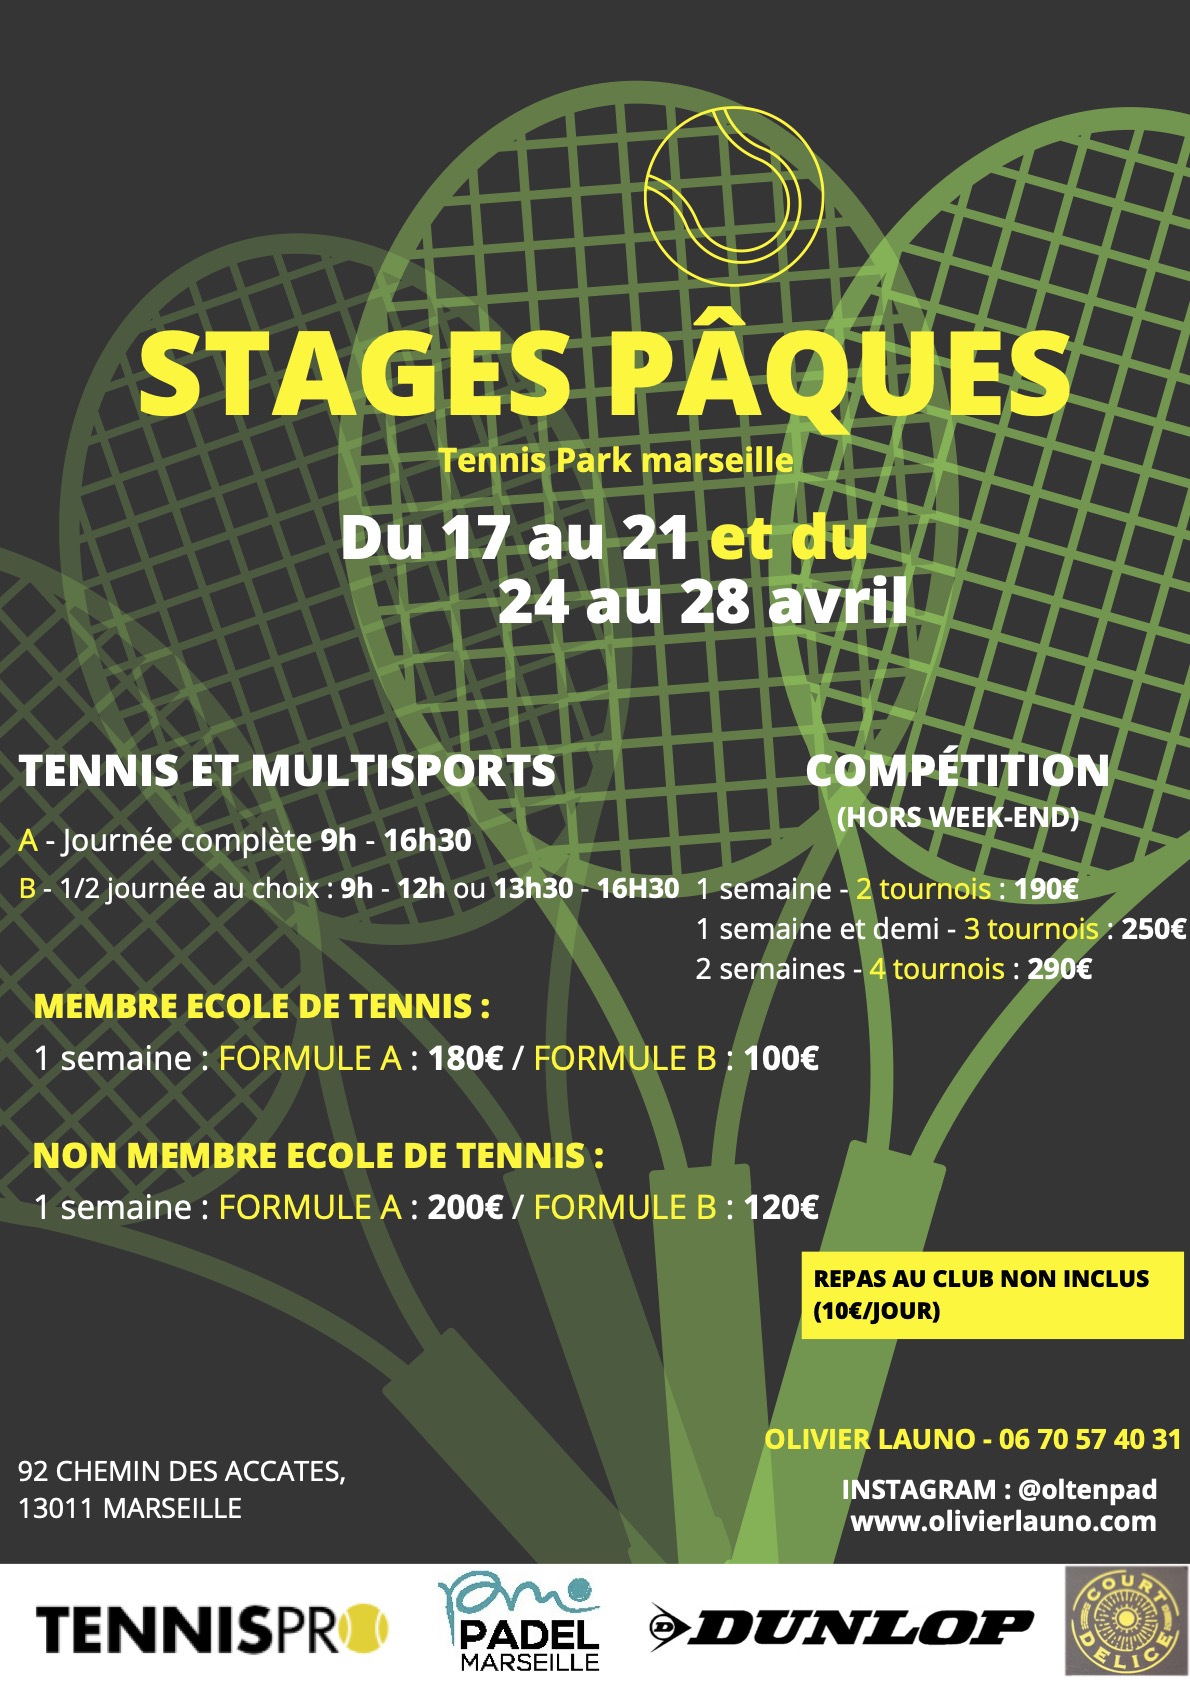 Stage pâques de tennis 
Tennis Park